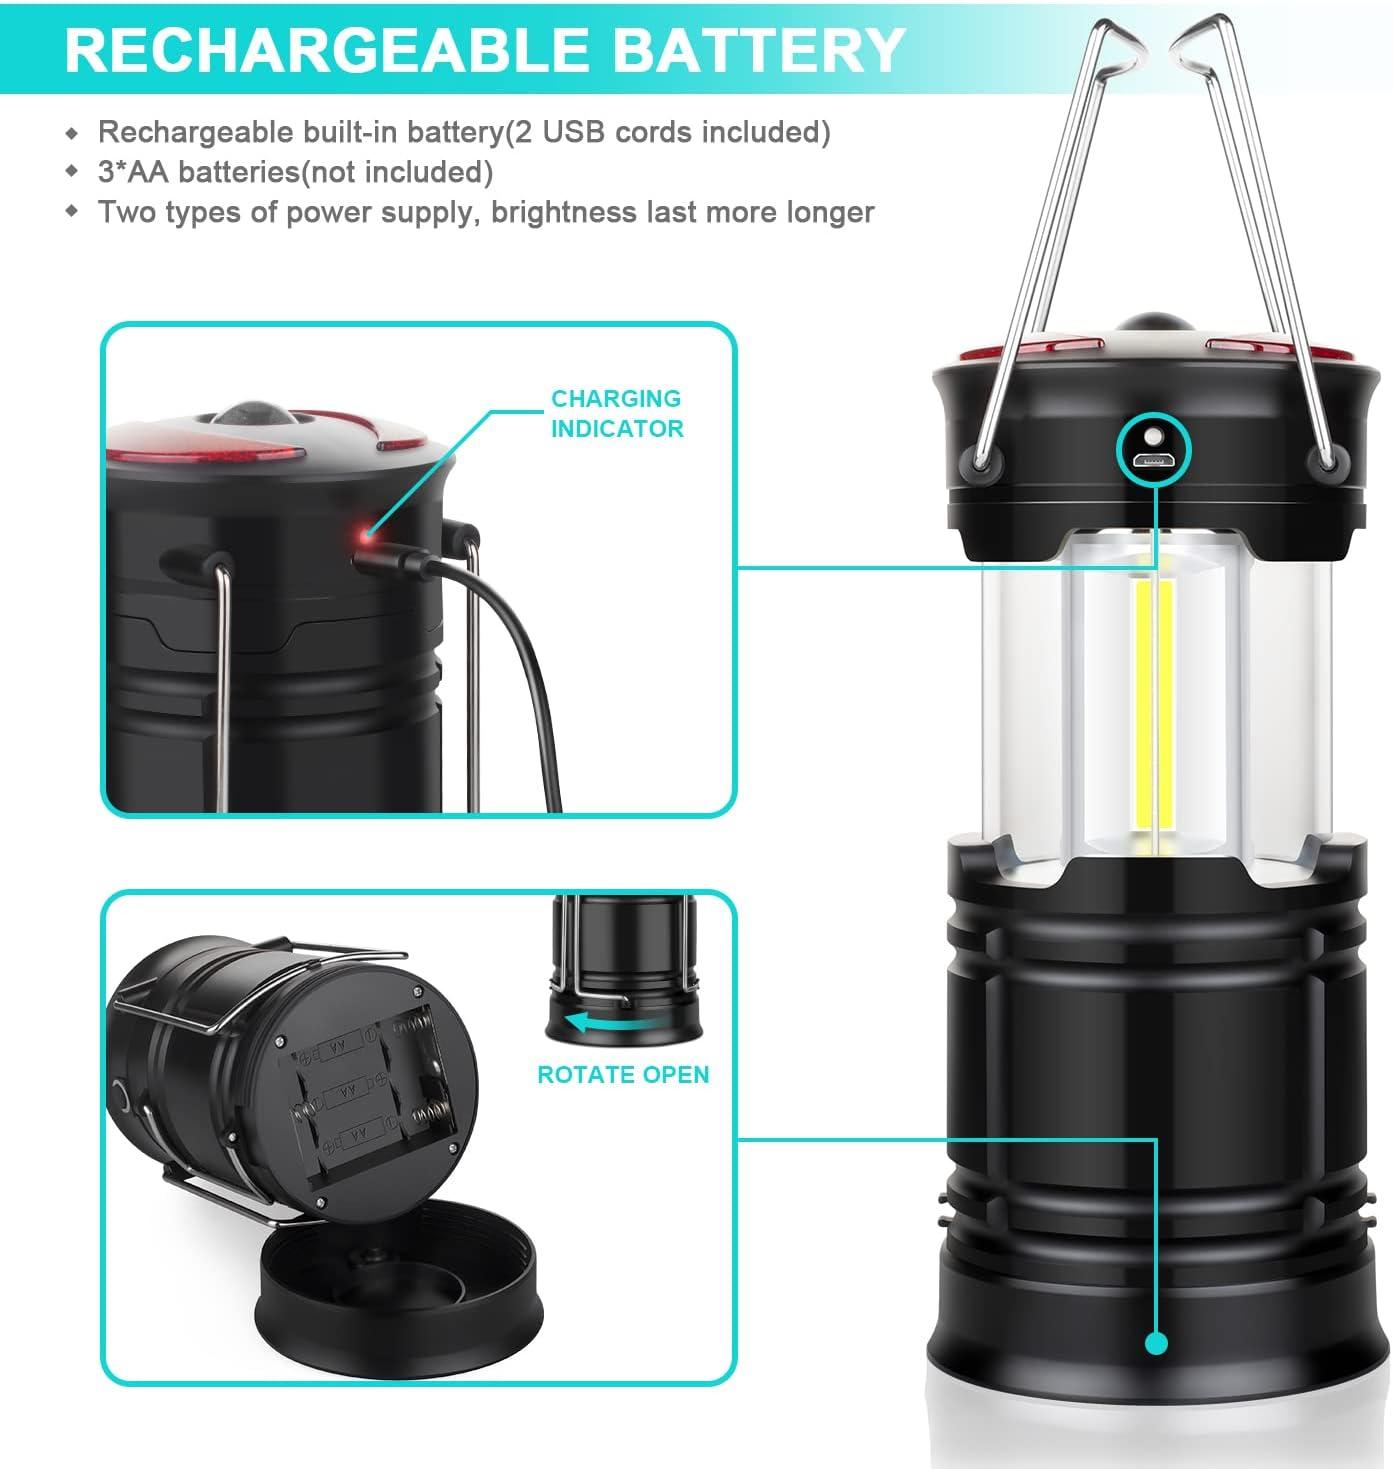 Custom LED Battery Operated Lanterns 